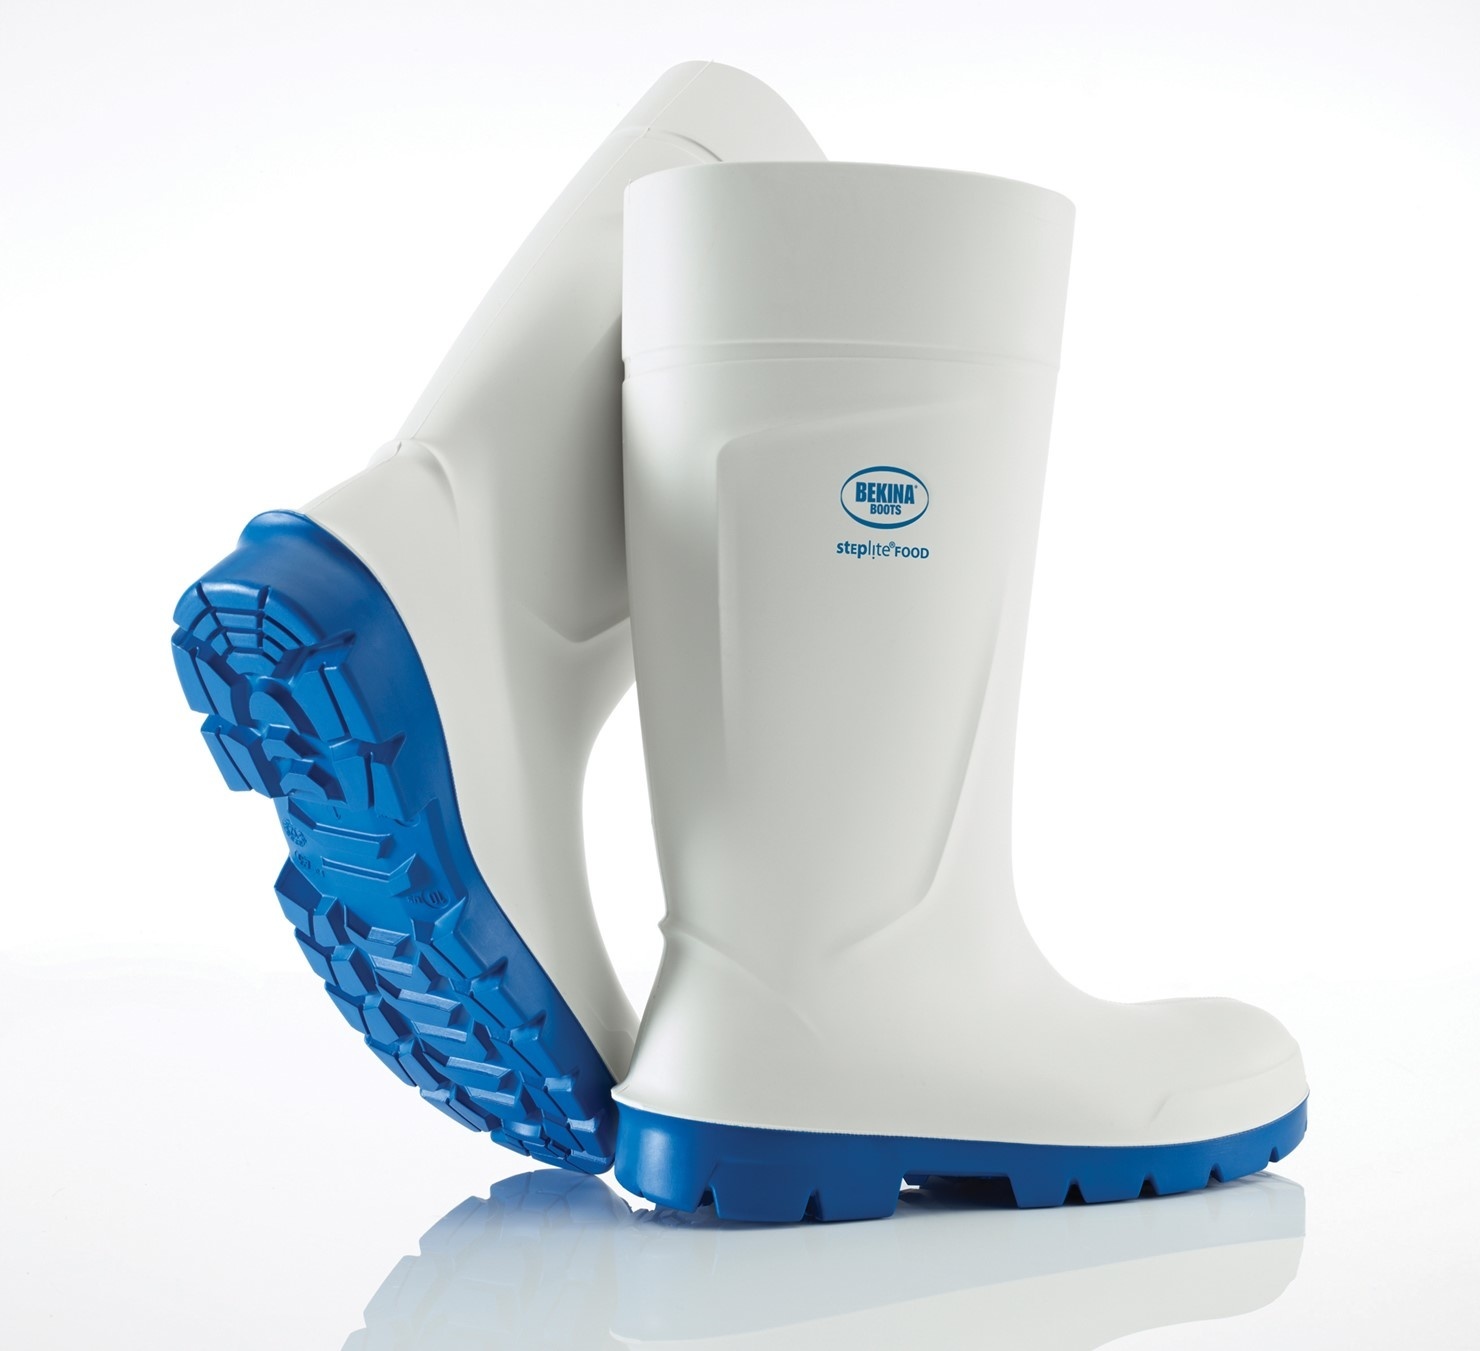 Bekina boots PU-Stivale Bekina Steplite - EasyGrip, puntale in acciaio  (S4), bianco - Schlenker AG - attrezzature per la pulizia Vikan -  attrezzature per fabbrica - abbigliamento - stivali - scarpe